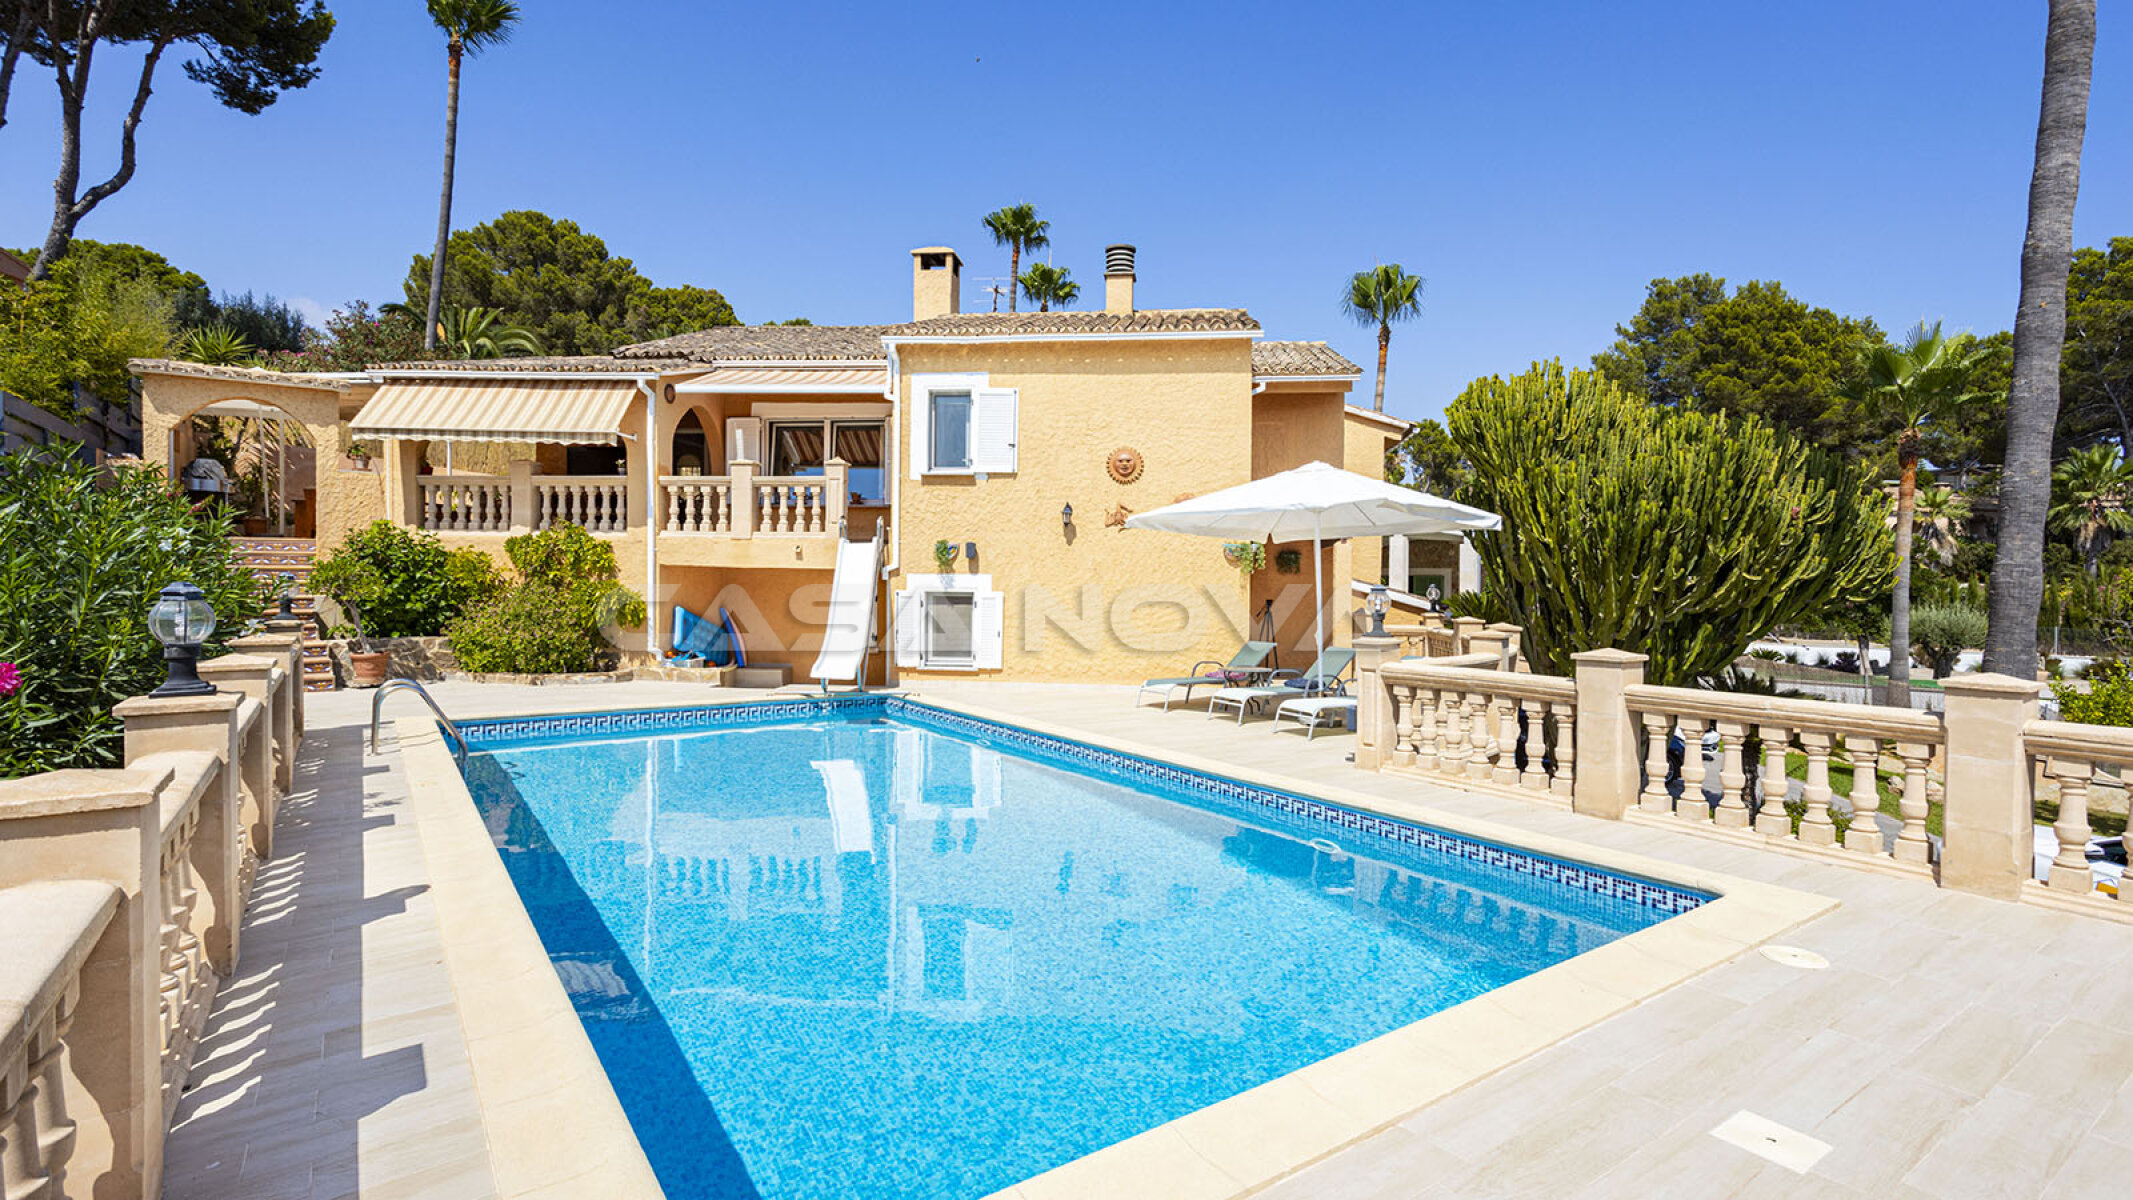 Villa mit Pool auf Mallorca in ruhiger S�dwestlage